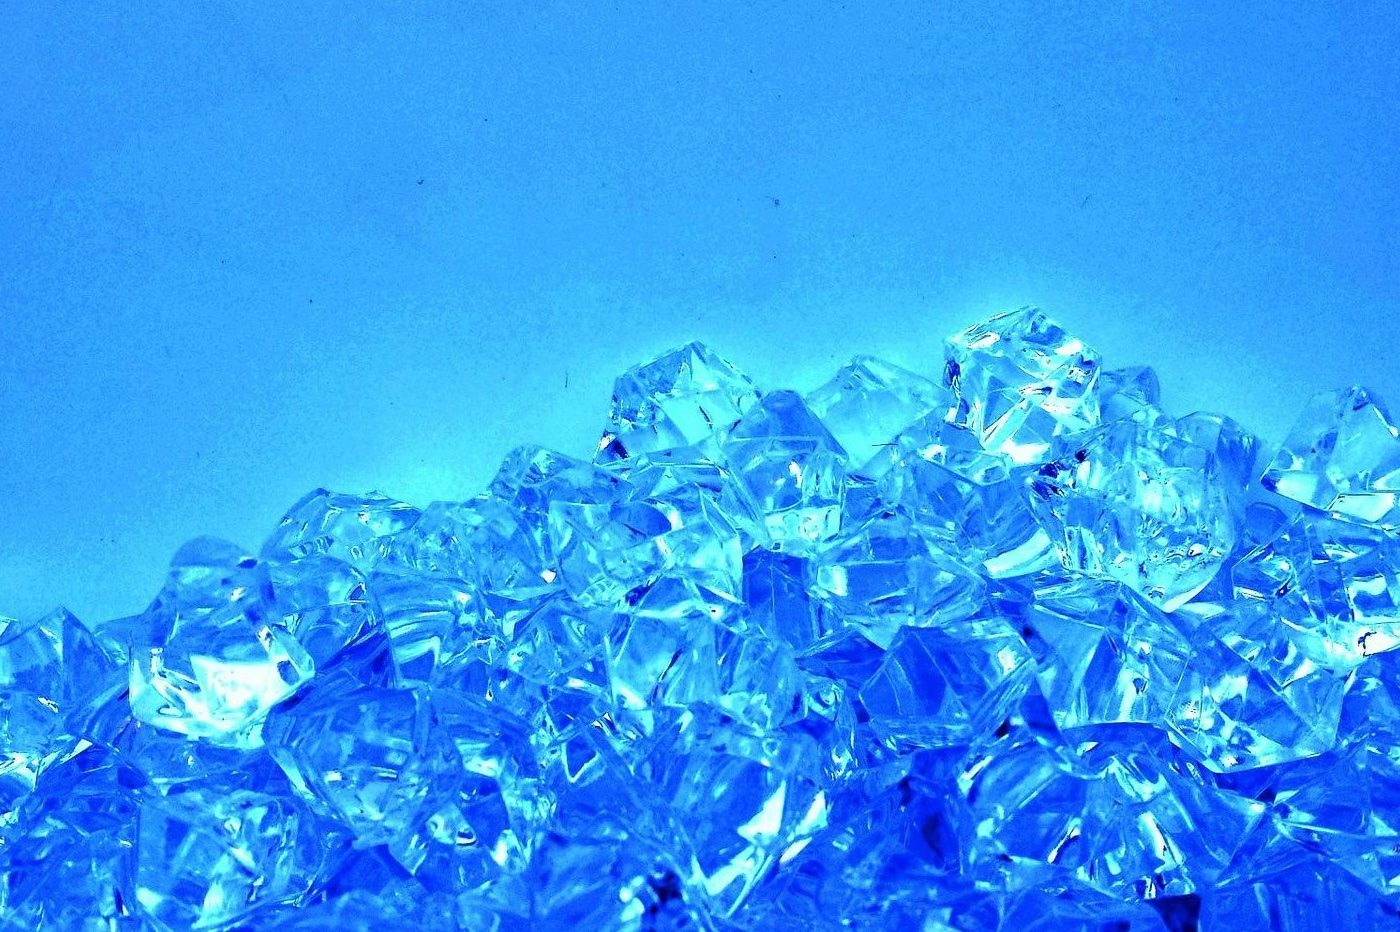 Este diamante podría contener 25 mil millones de gigabytes